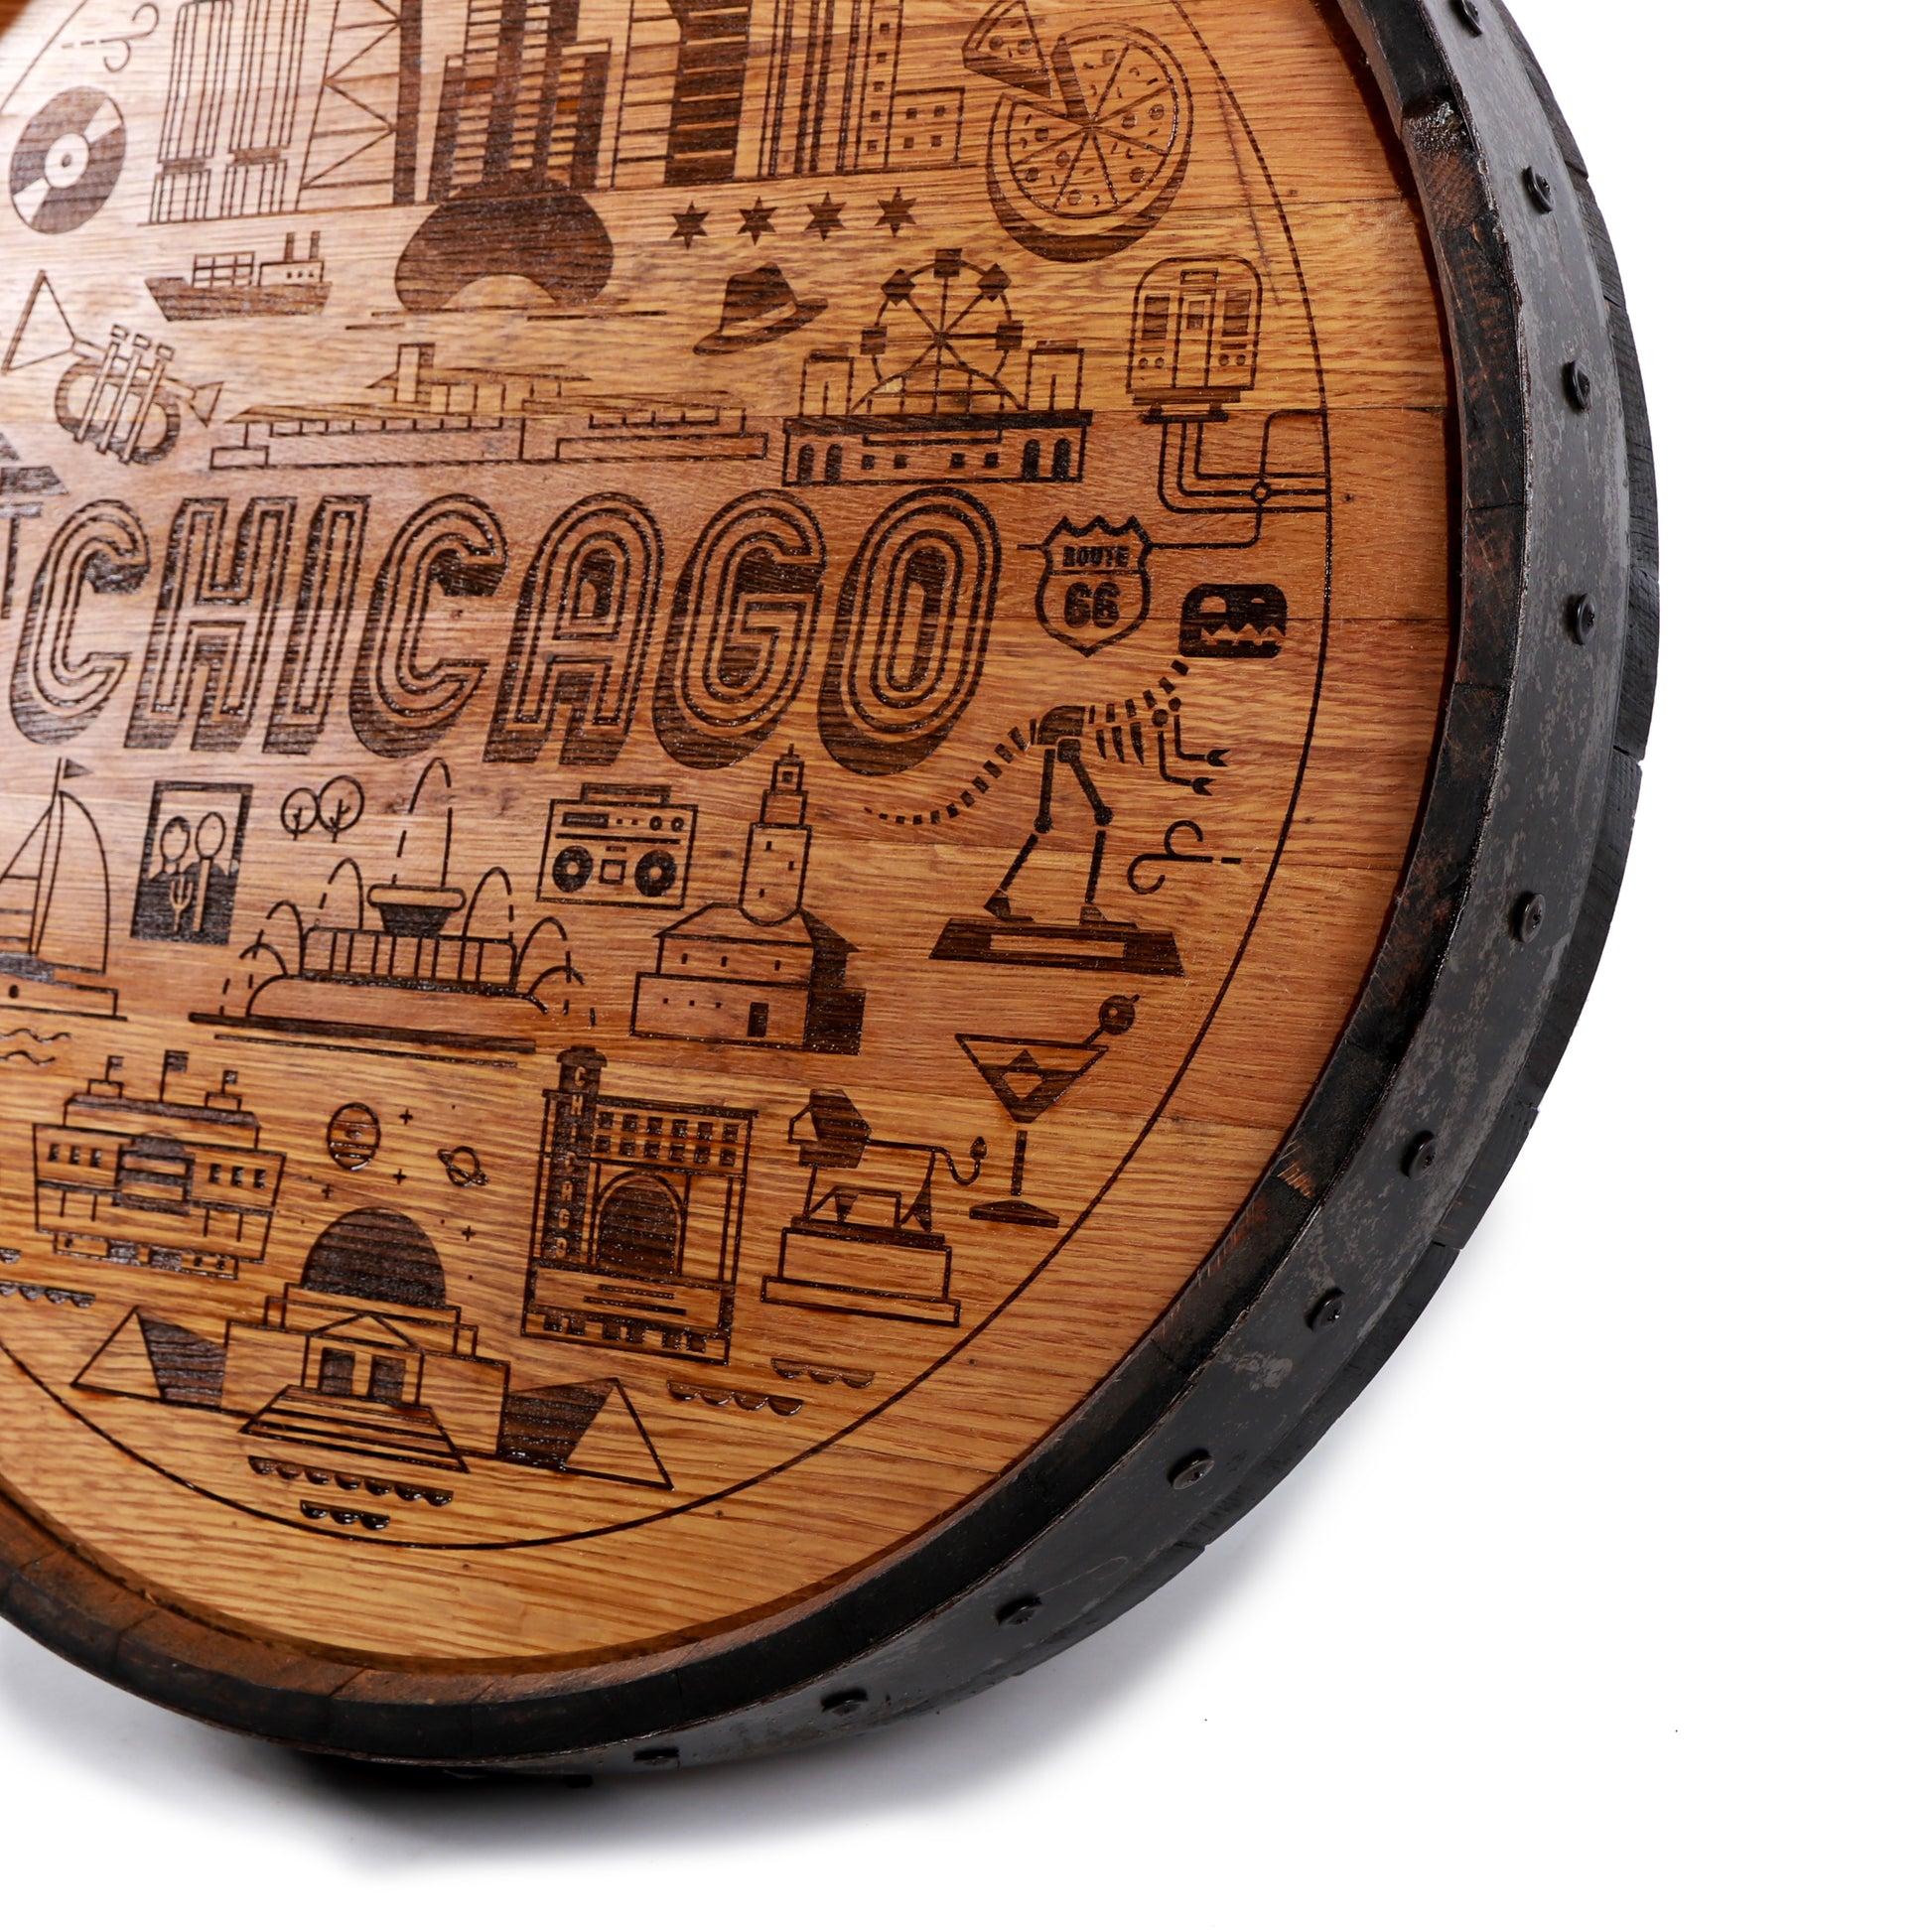 Chicago Design Engraved Whiskey Barrel Cap - Motor City Barrels